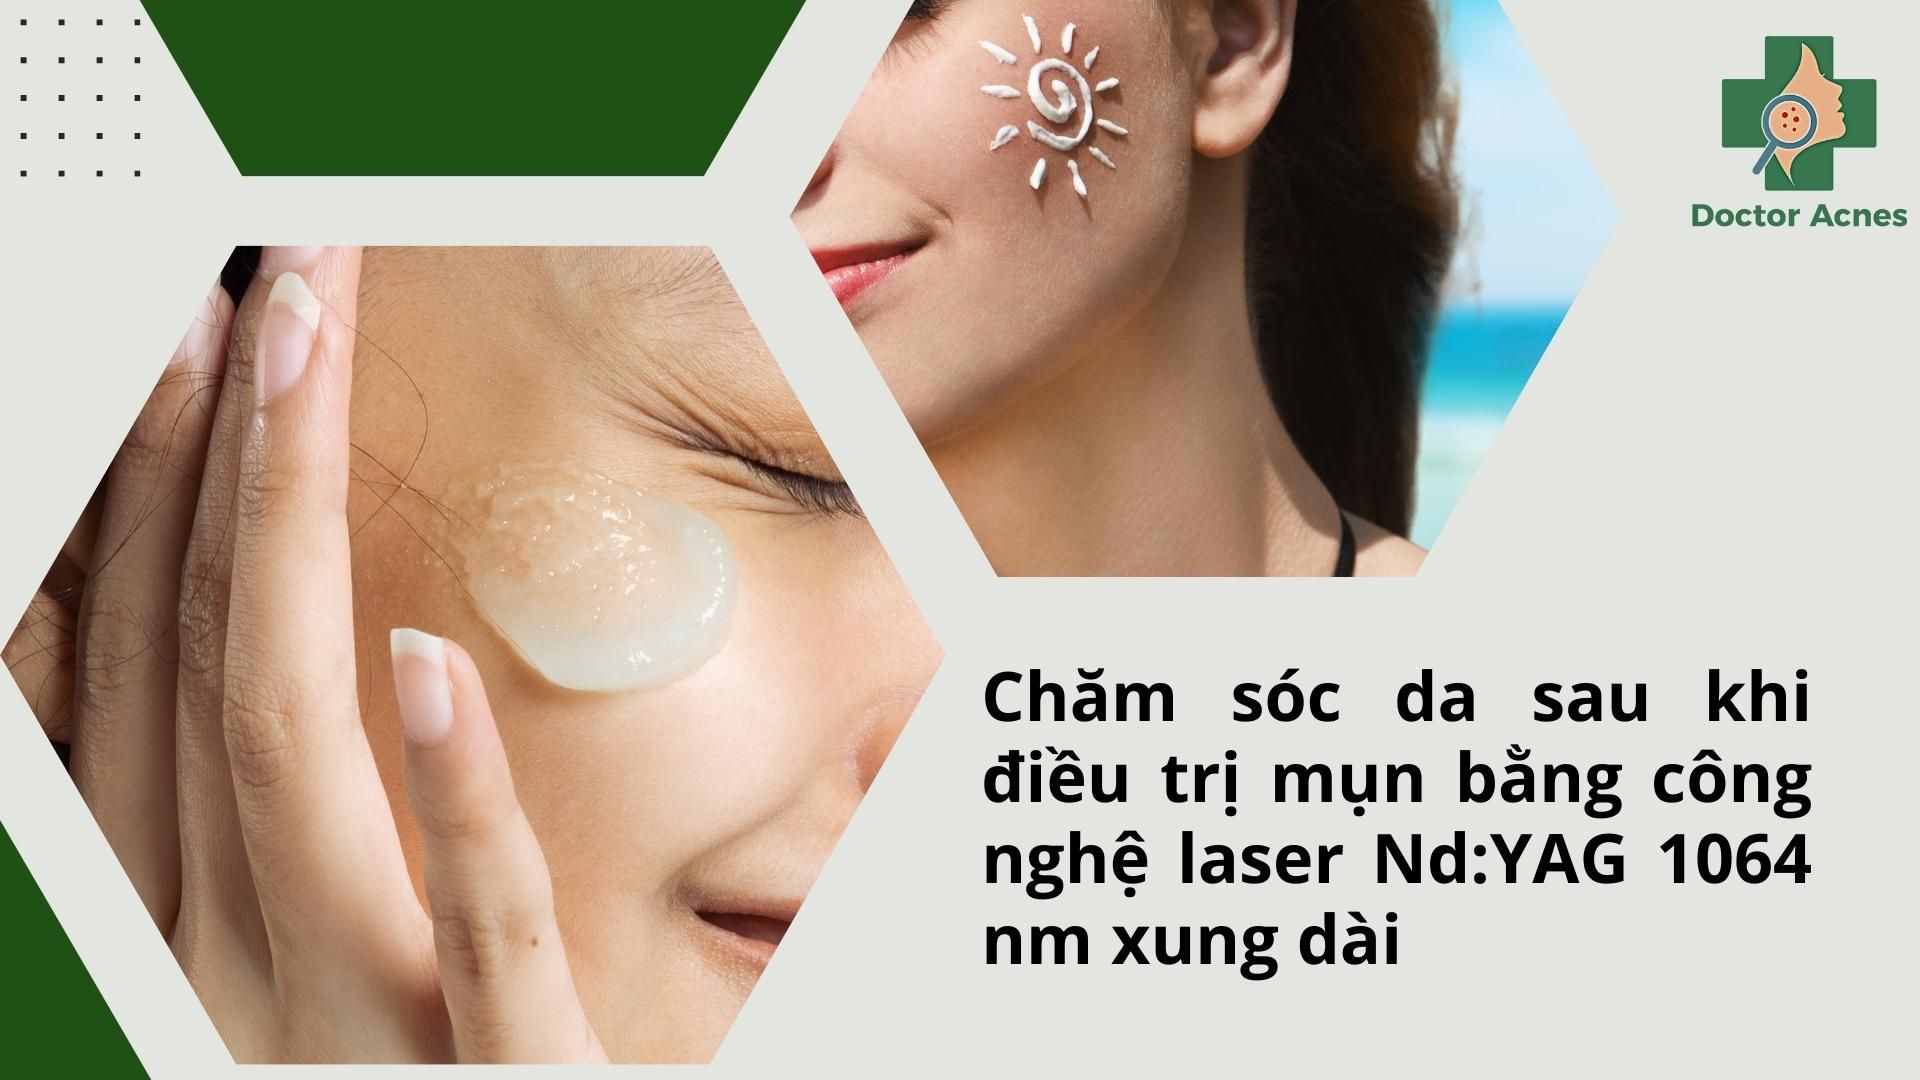 chăm sóc da sau điều trị mụn bằng công nghệ laser Nd:YAG 1064 nm xung dài